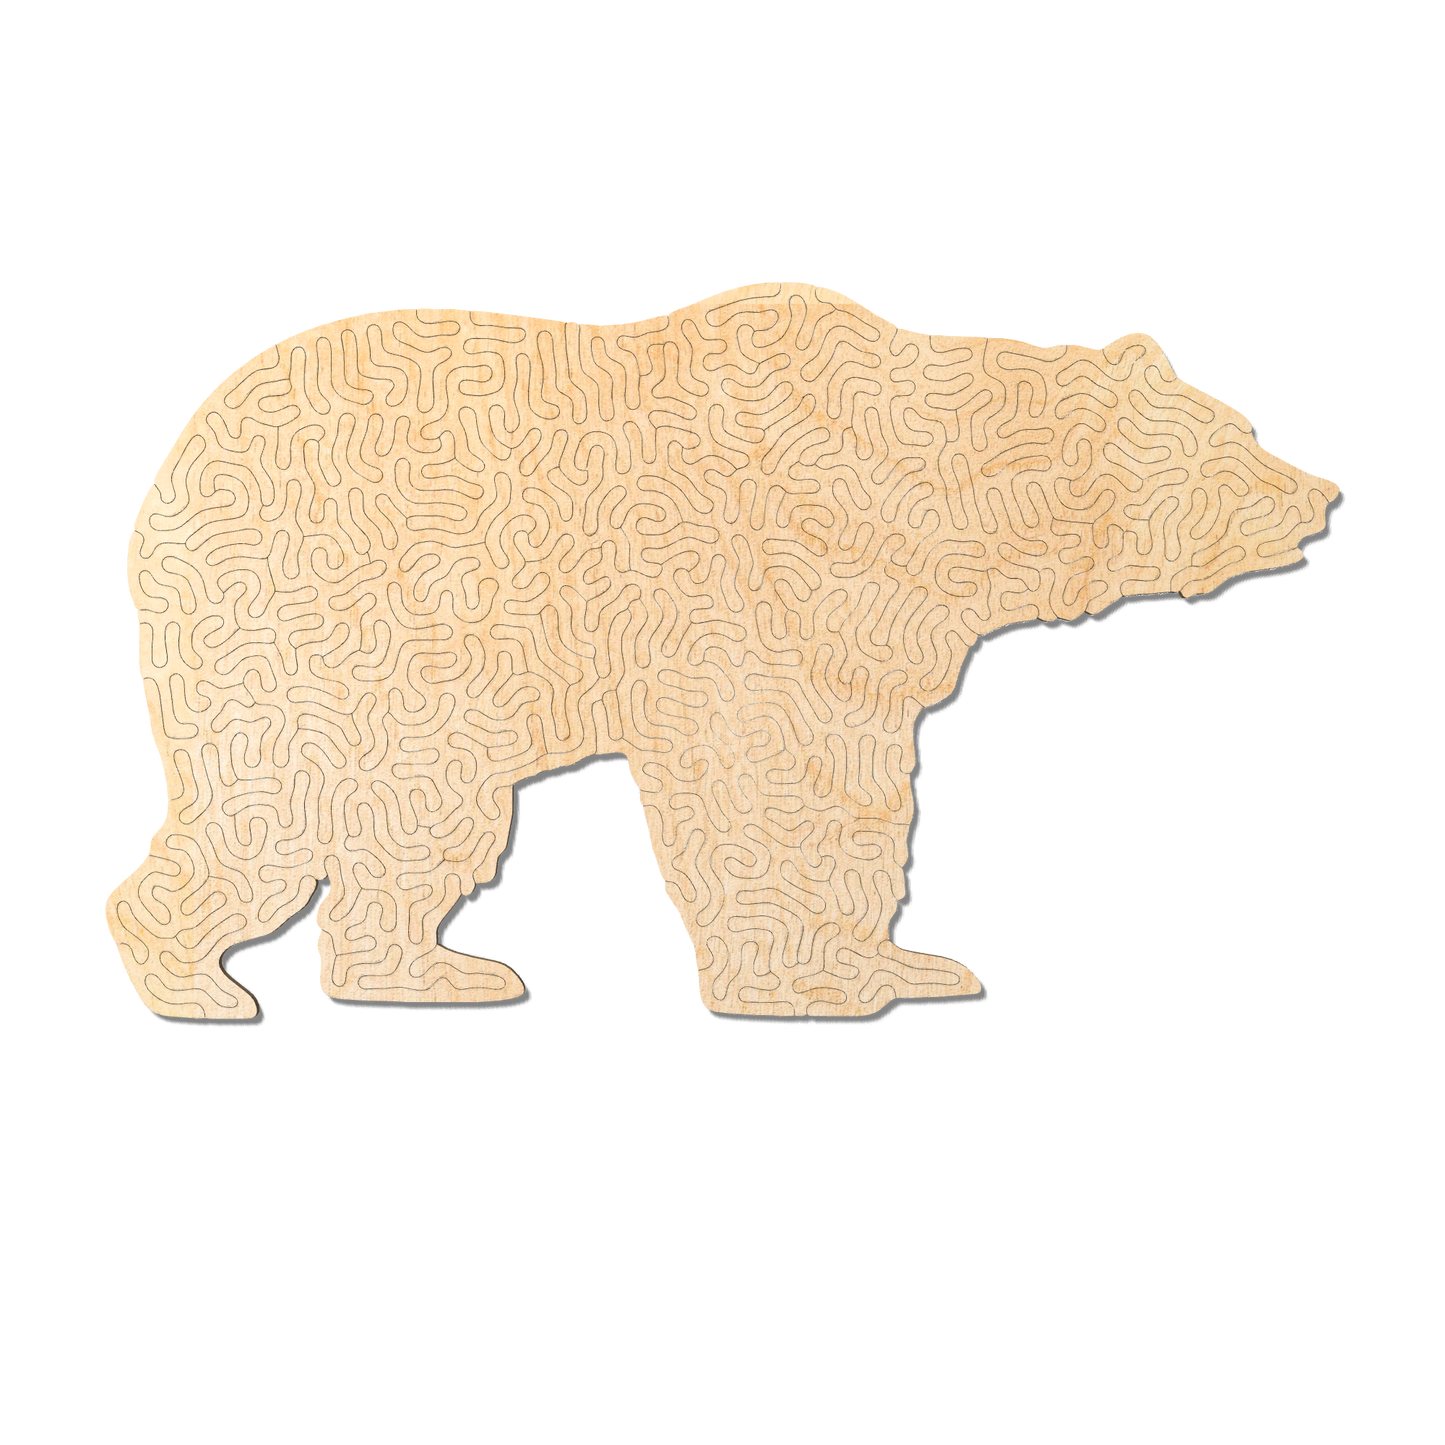 Bear | Wooden Puzzle | Entropy series | 77 pieces